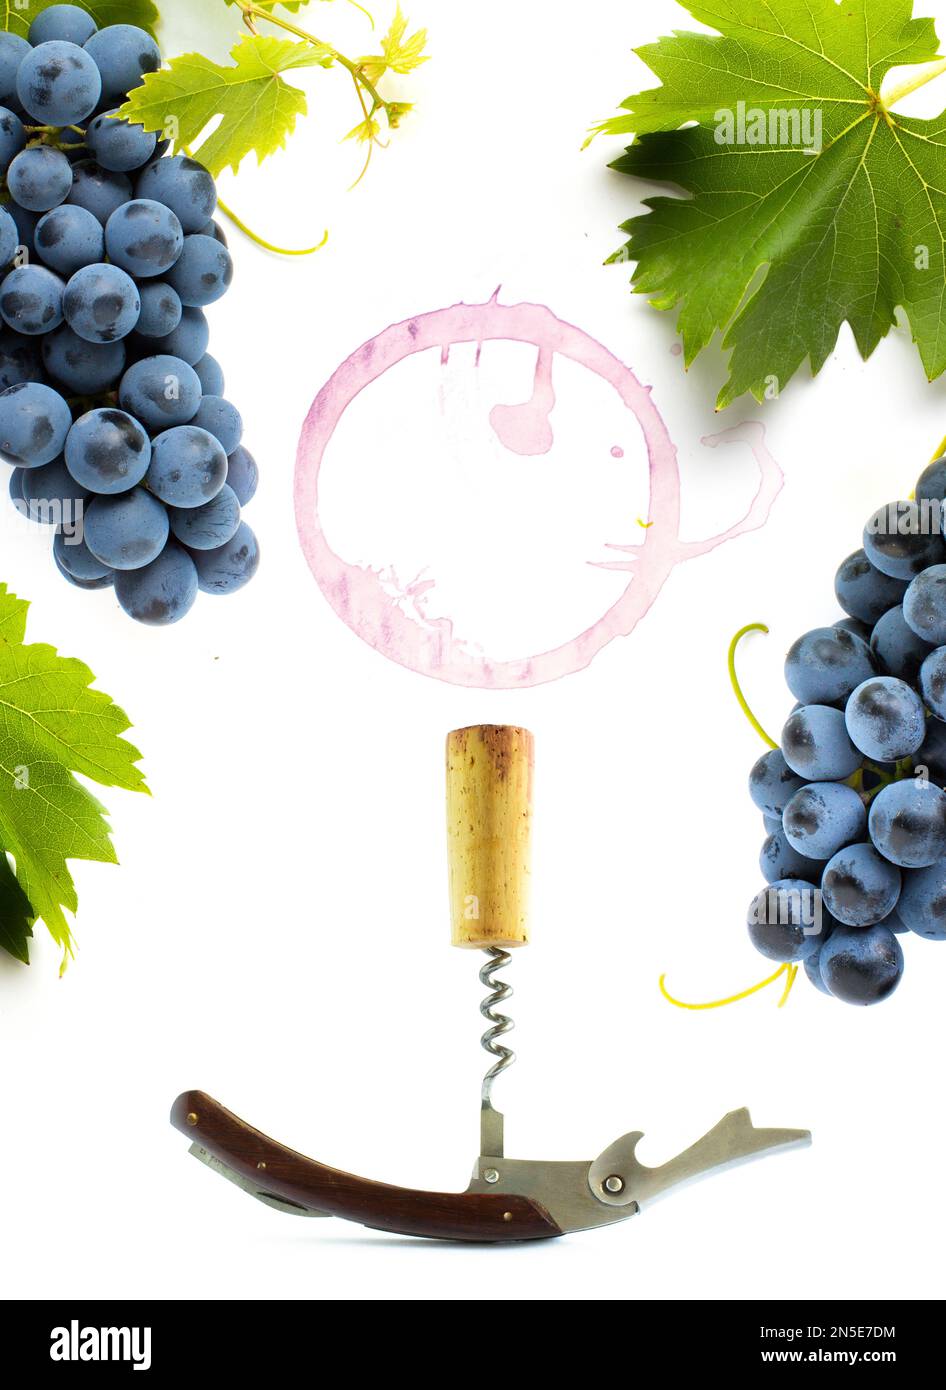 concept carte des vins ou carte des vins fond de design; vigne et raisins feuille et bouteille-vis sur fond blanc Banque D'Images